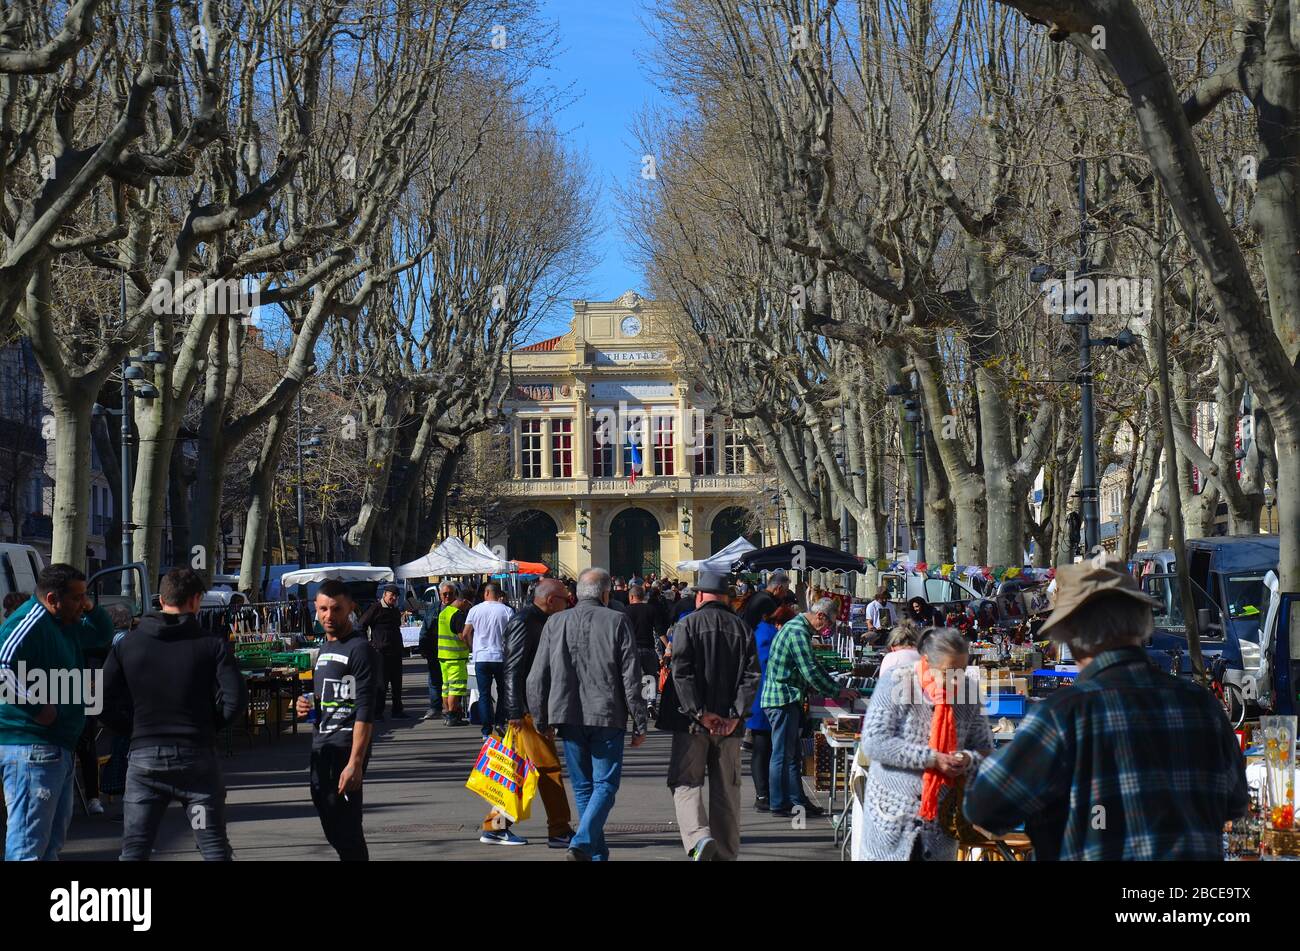 Béziers im Süden Frankreichs, kurz vor der Ausgangssperre wegen Corona Virus: Flohmarkt vor dem Theater Stock Photo